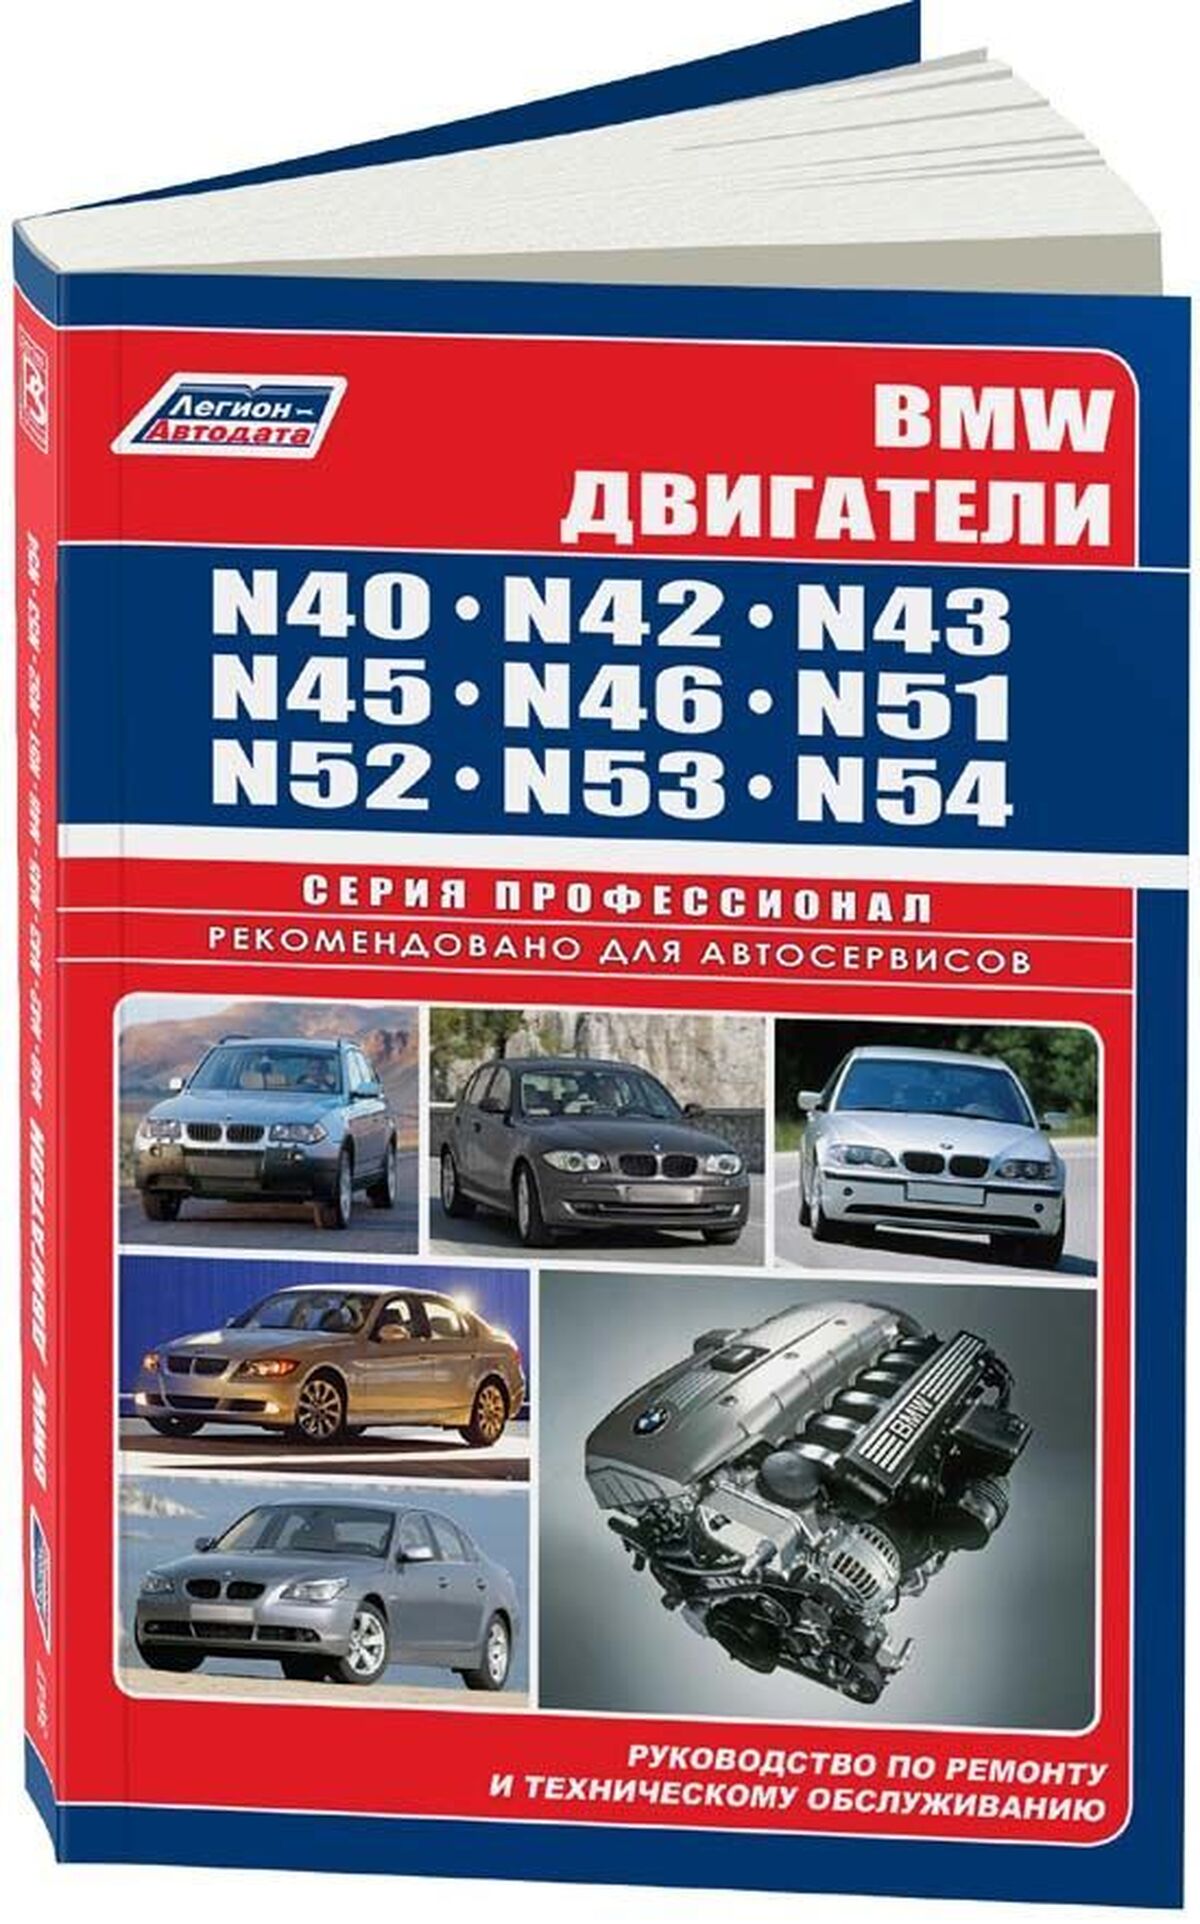 Книга: Двигатели BMW N40 / N42 / N43 / N45 / N46 / N51 / N52 / N53 / N54 | Легион-Aвтодата